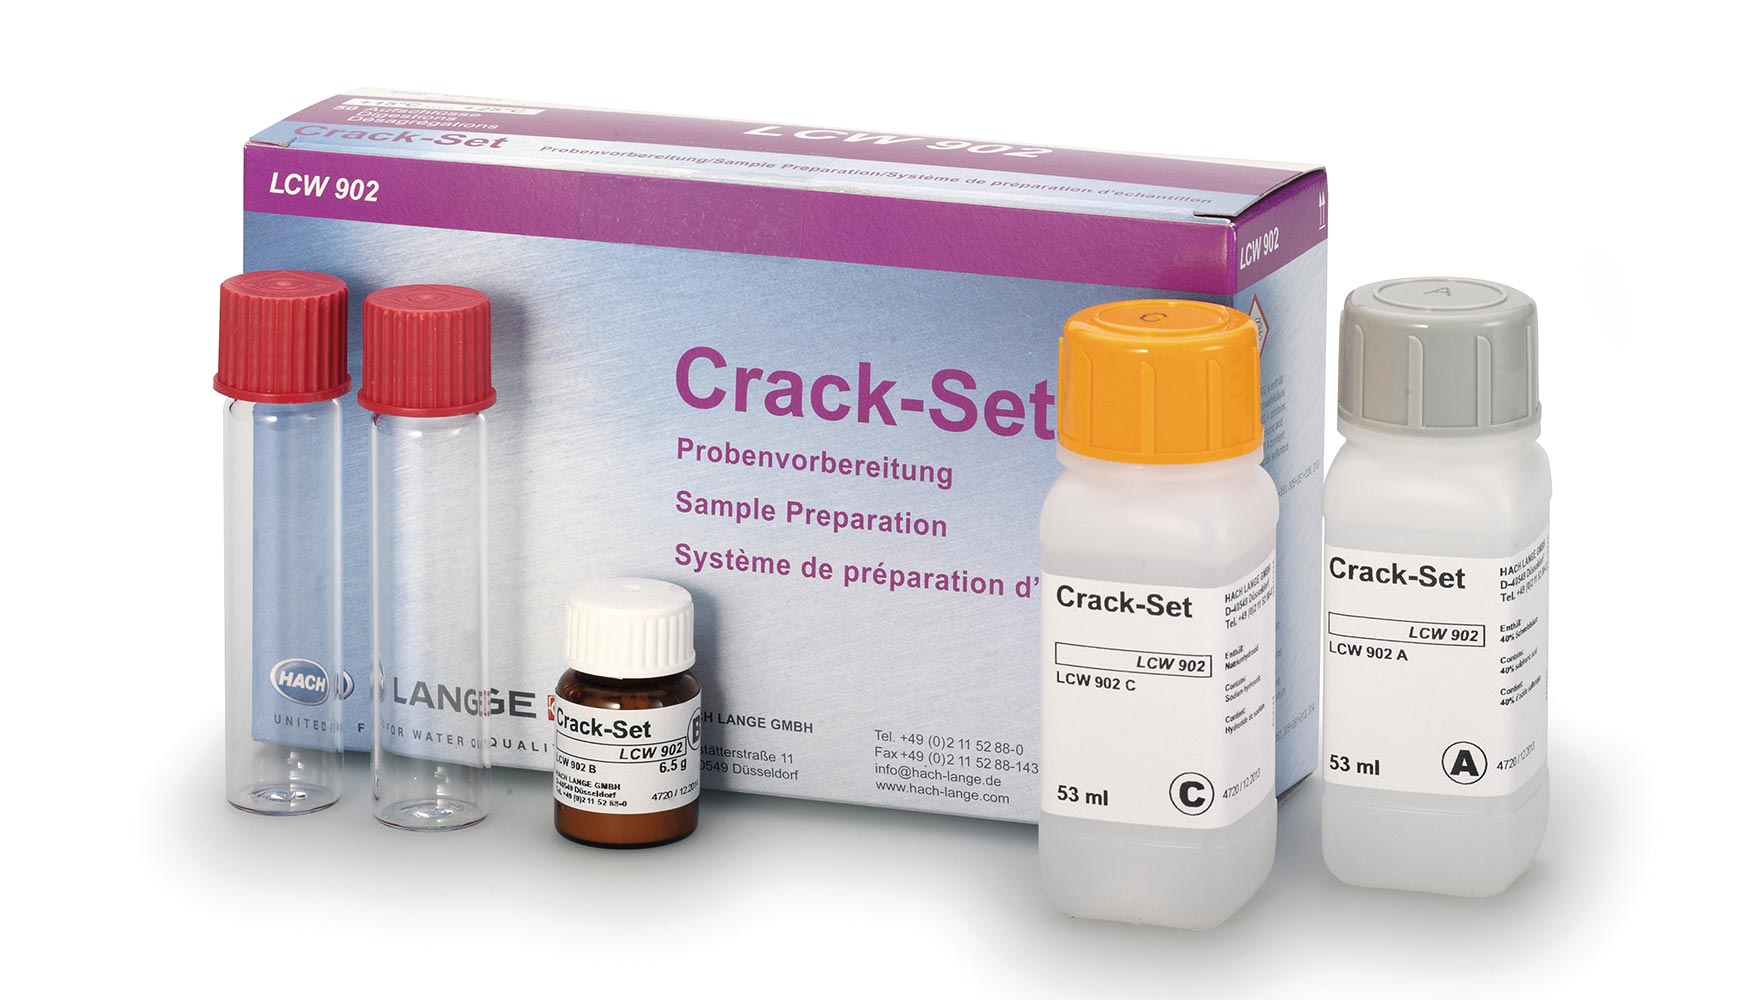 Crack Set LCW902 con cido, agente oxidante y solucin tampn